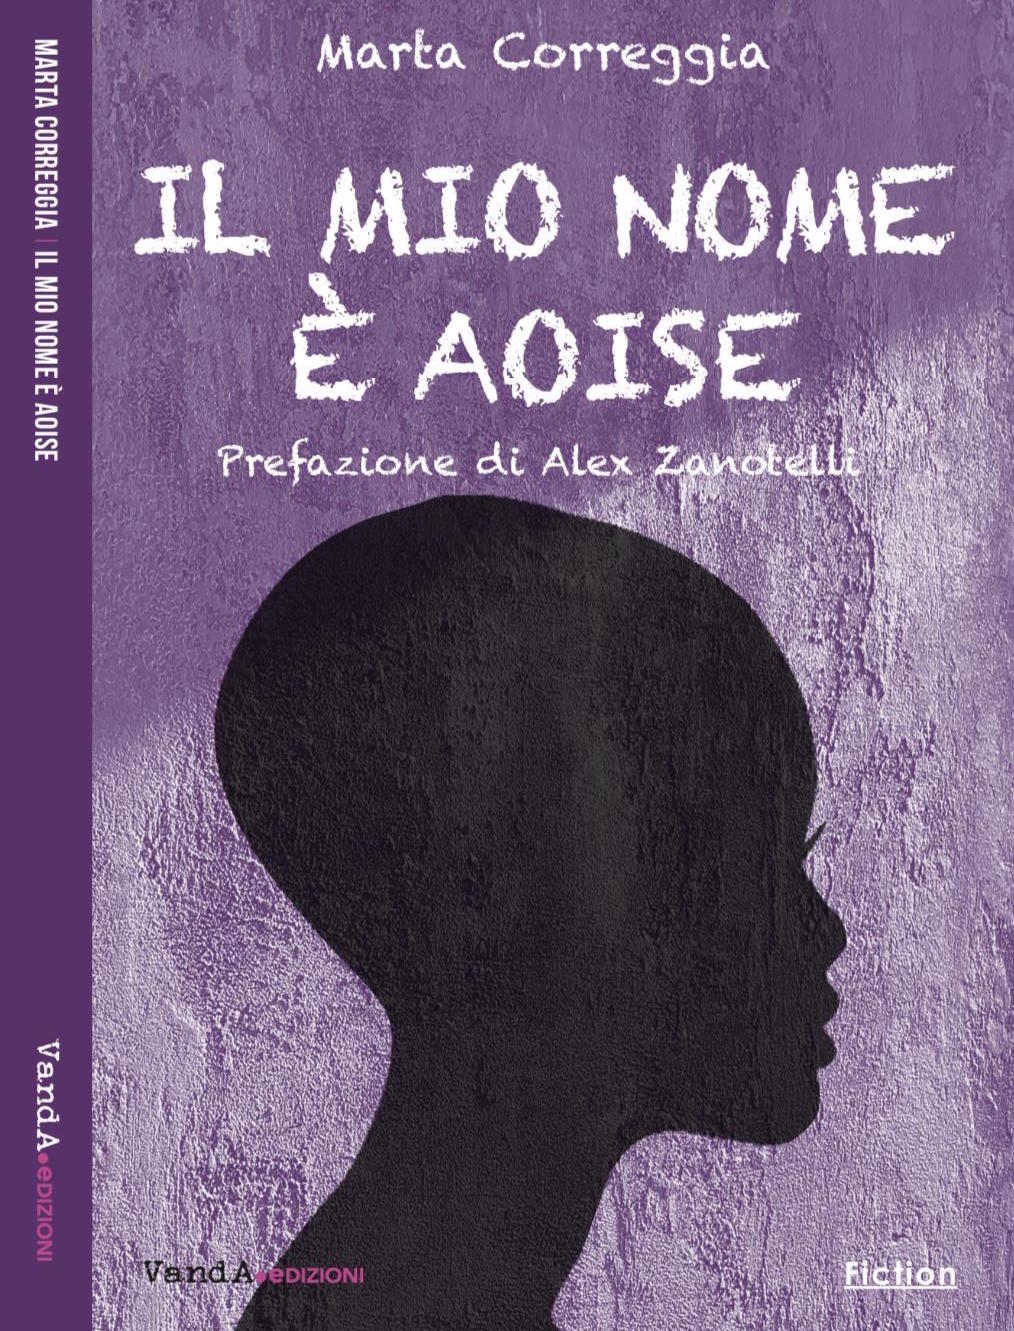 Recensione al romanzo “Il mio nome è Aoise” di Marta Correggia a cura di Donatella Palumbo